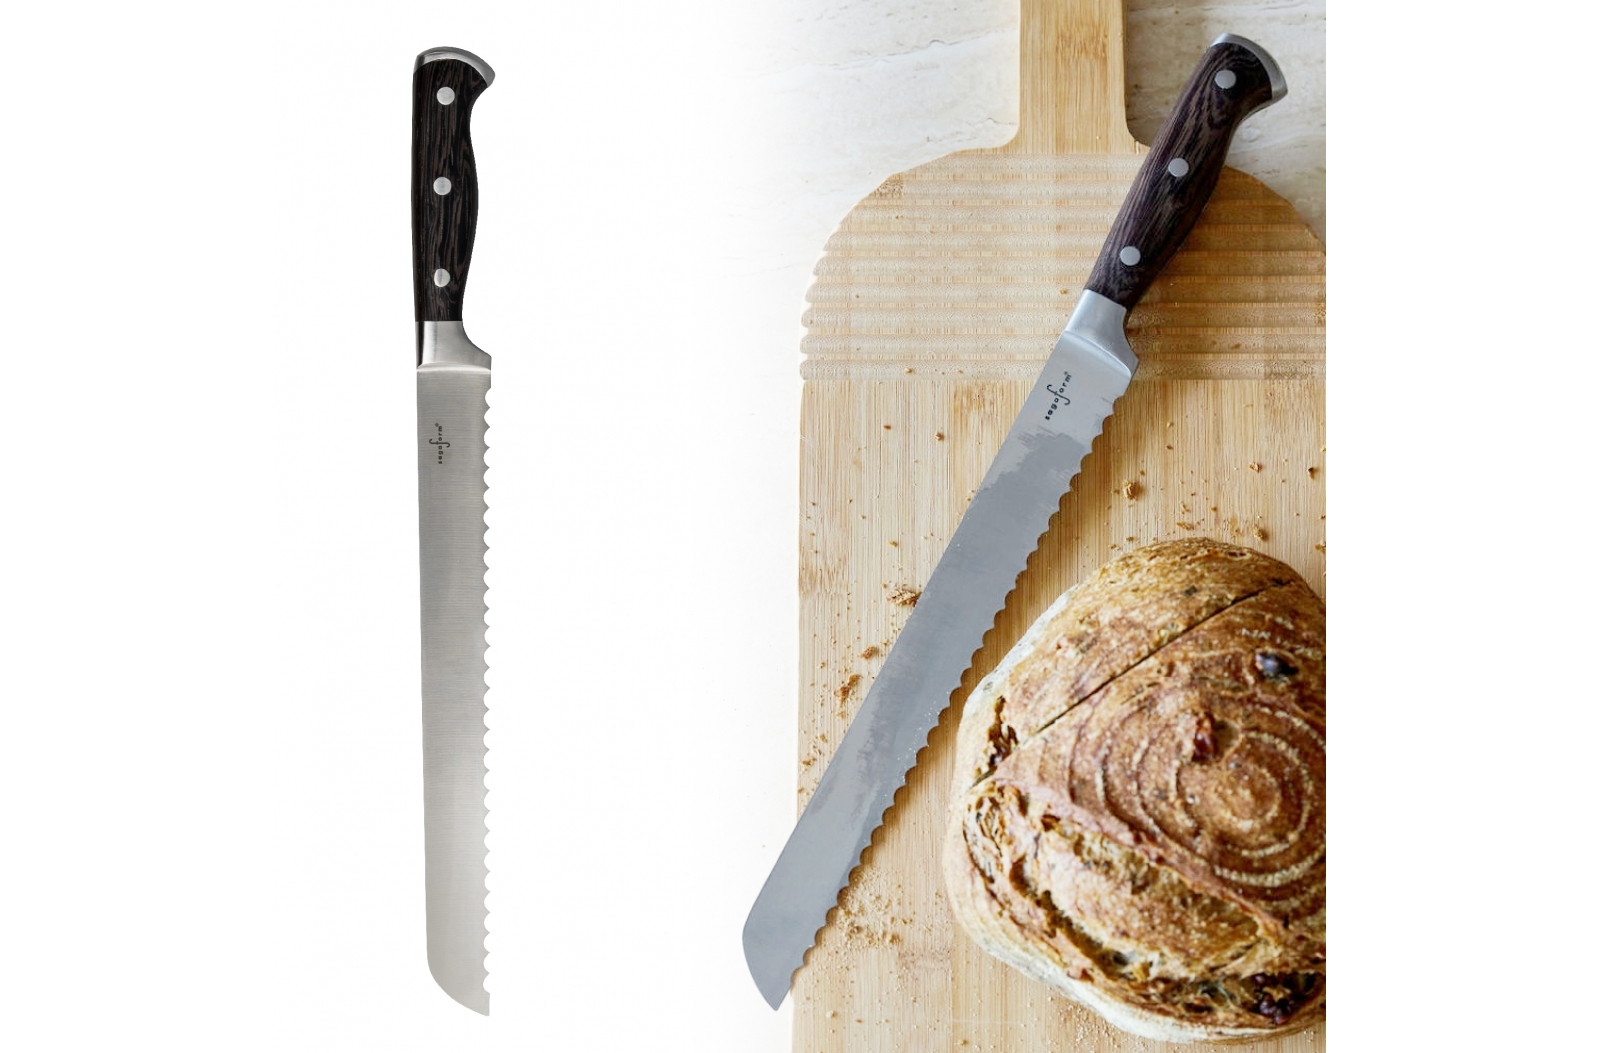 Couteau à pain SteelBake de luxe - Montcuq - Zaprinta France